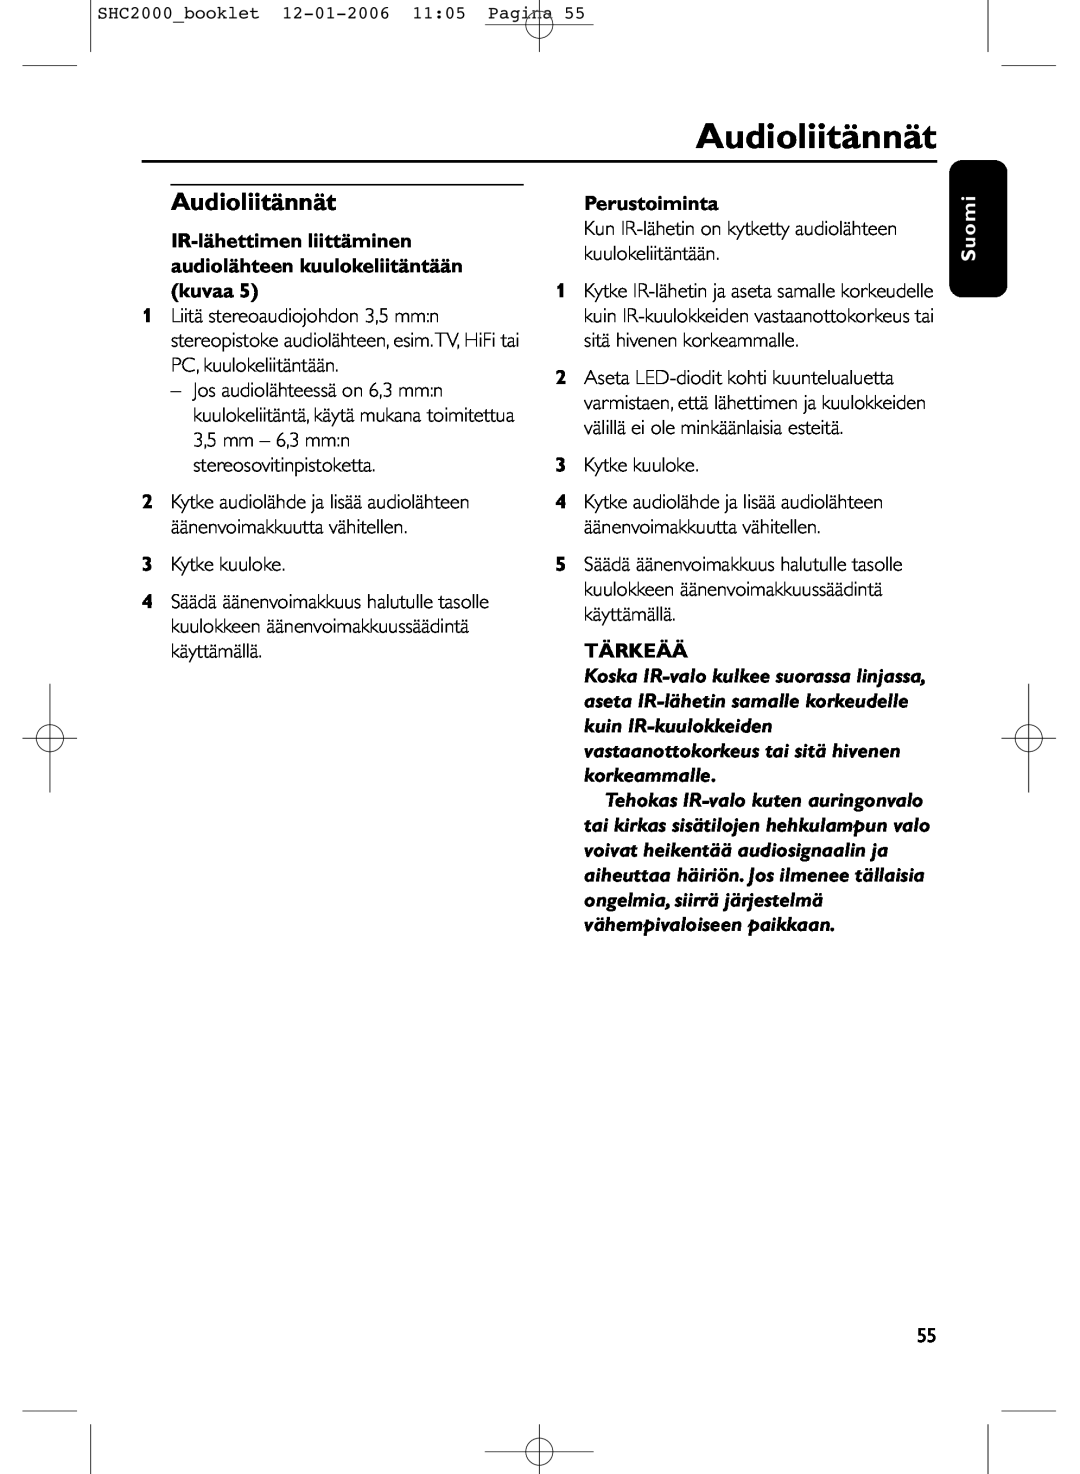 Philips SHC2000 manual Audioliitännät, Perustoiminta, Tärkeää, Suomi 